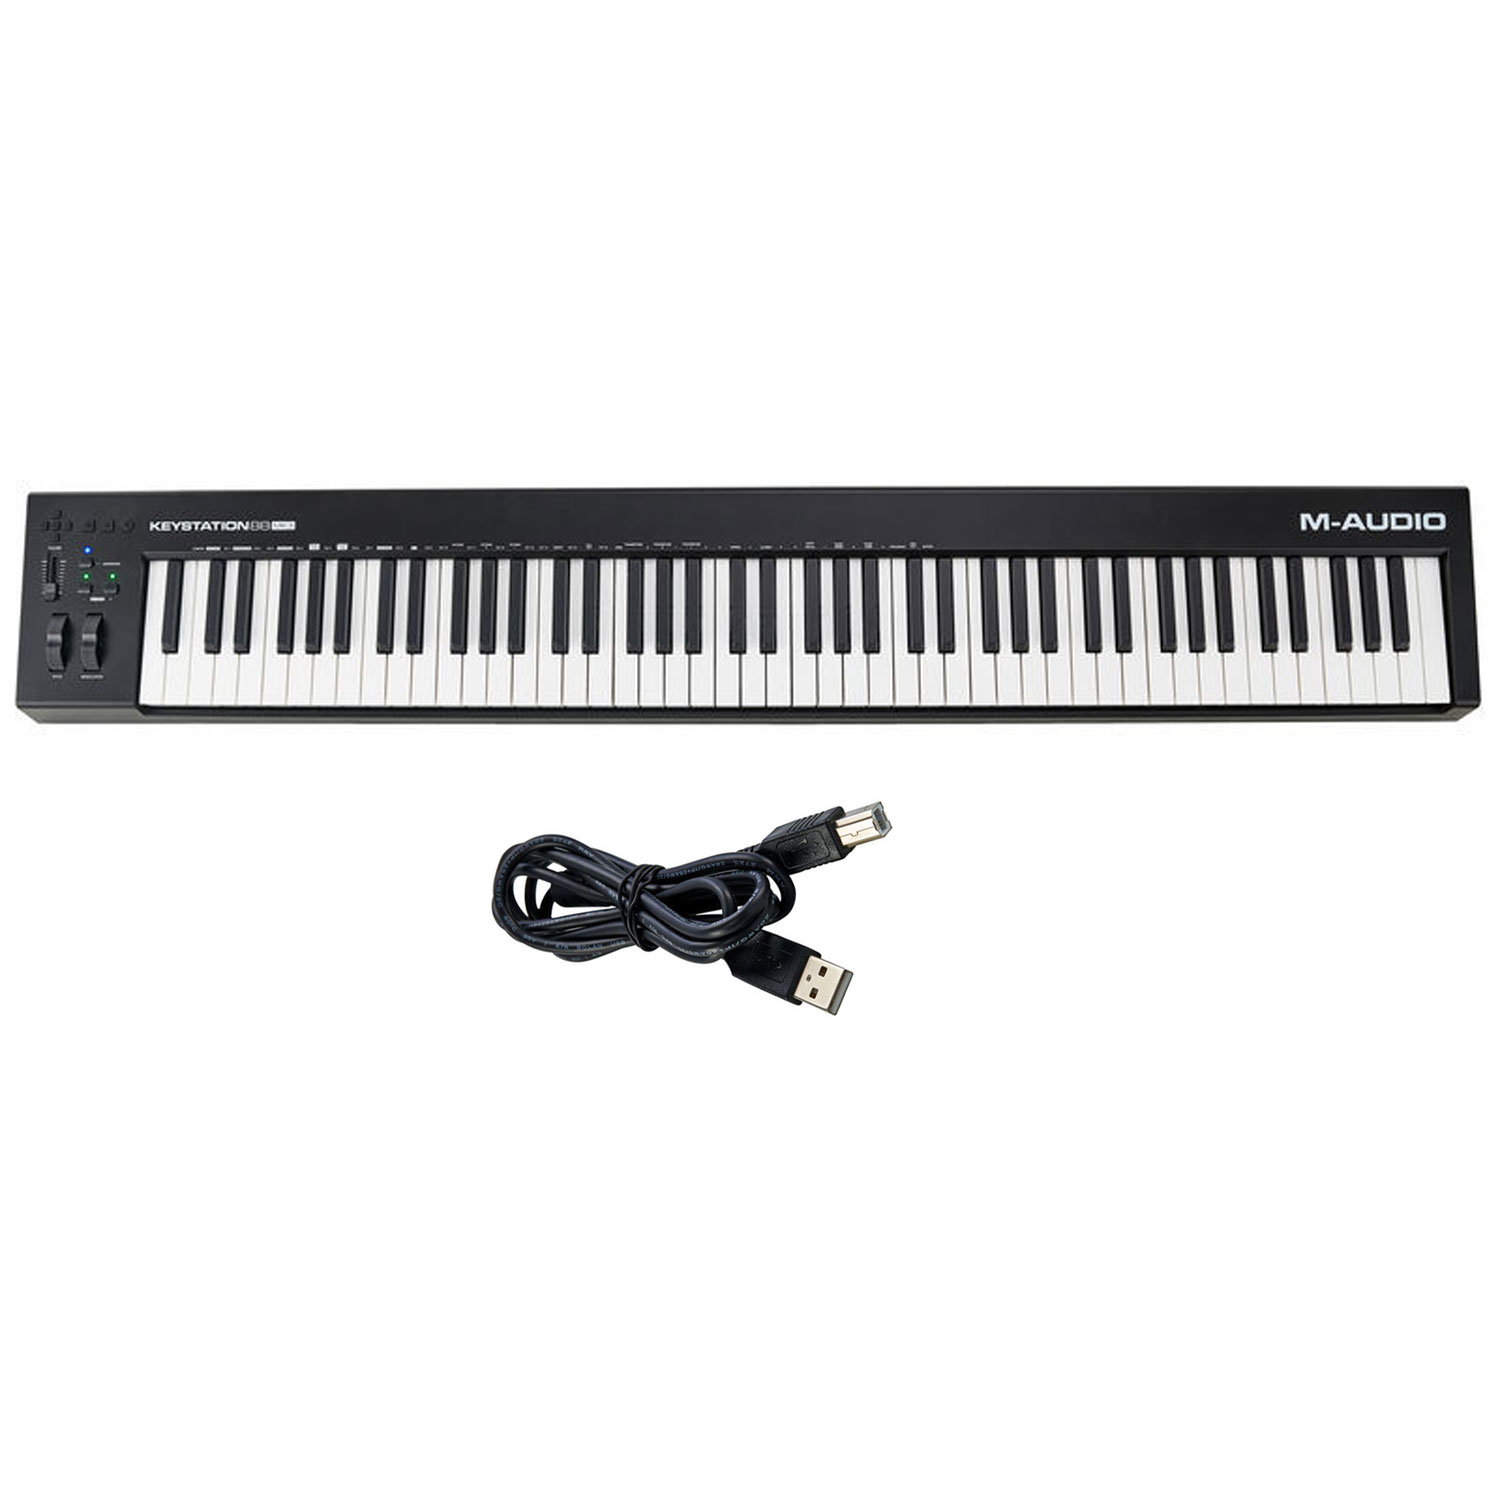 Chinh-hang-M-Audio-Keystation-88-Phim-MK3-MIDI-Keyboard-Controller-Tiki